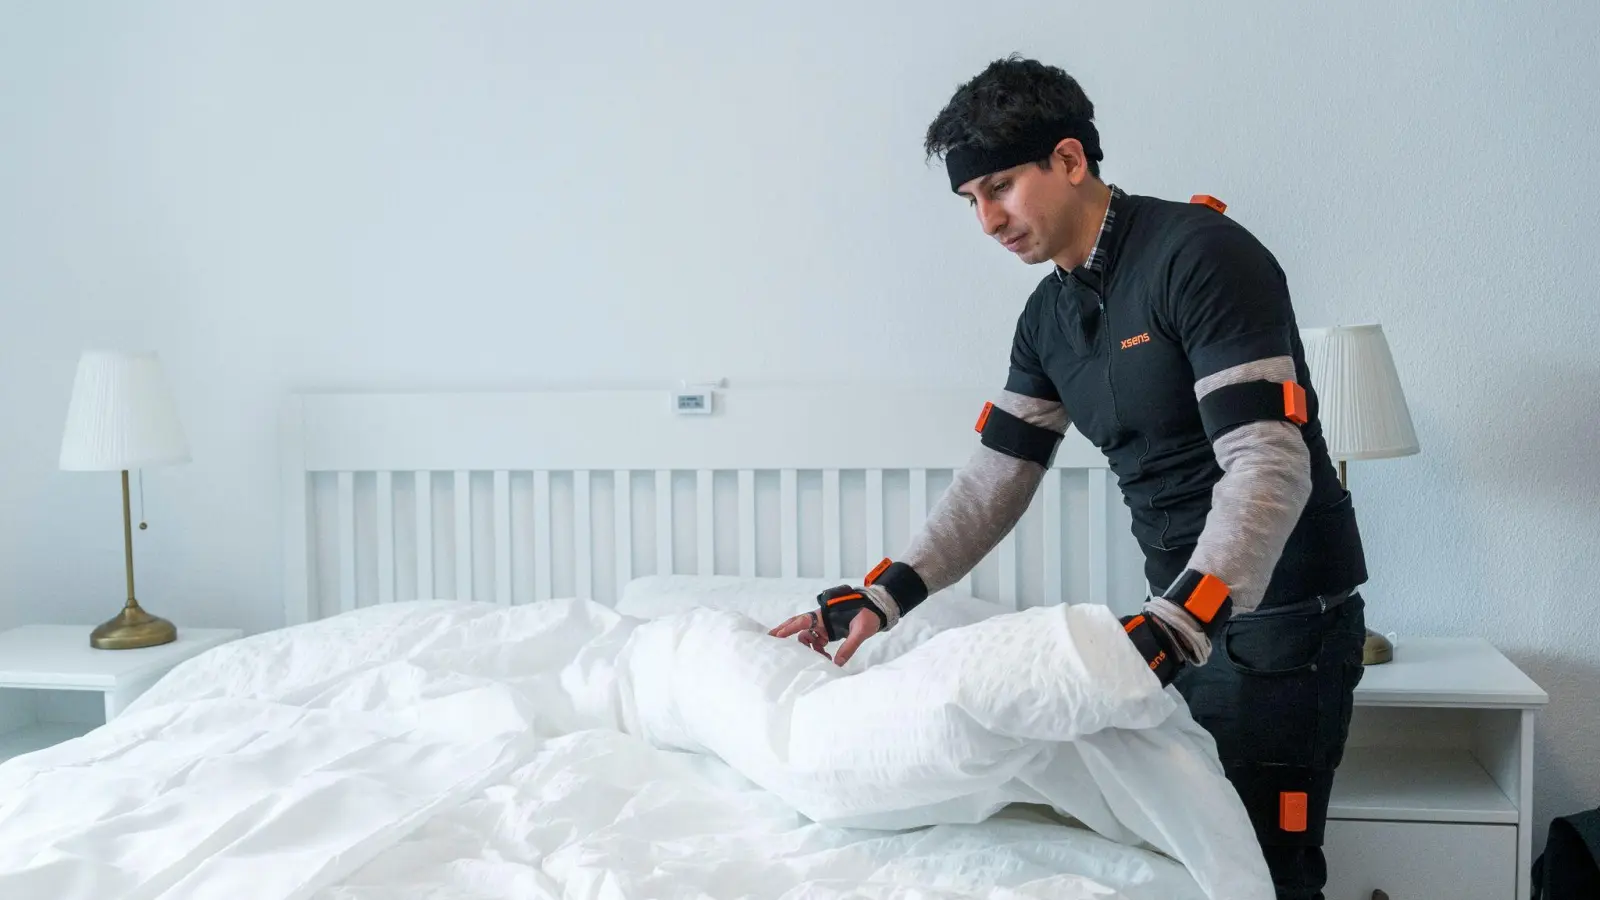 Doktorand Renato Mio räumt ein Bett auf, während er Bewegungssensoren trägt. (Foto: Daniel Vogl/dpa)